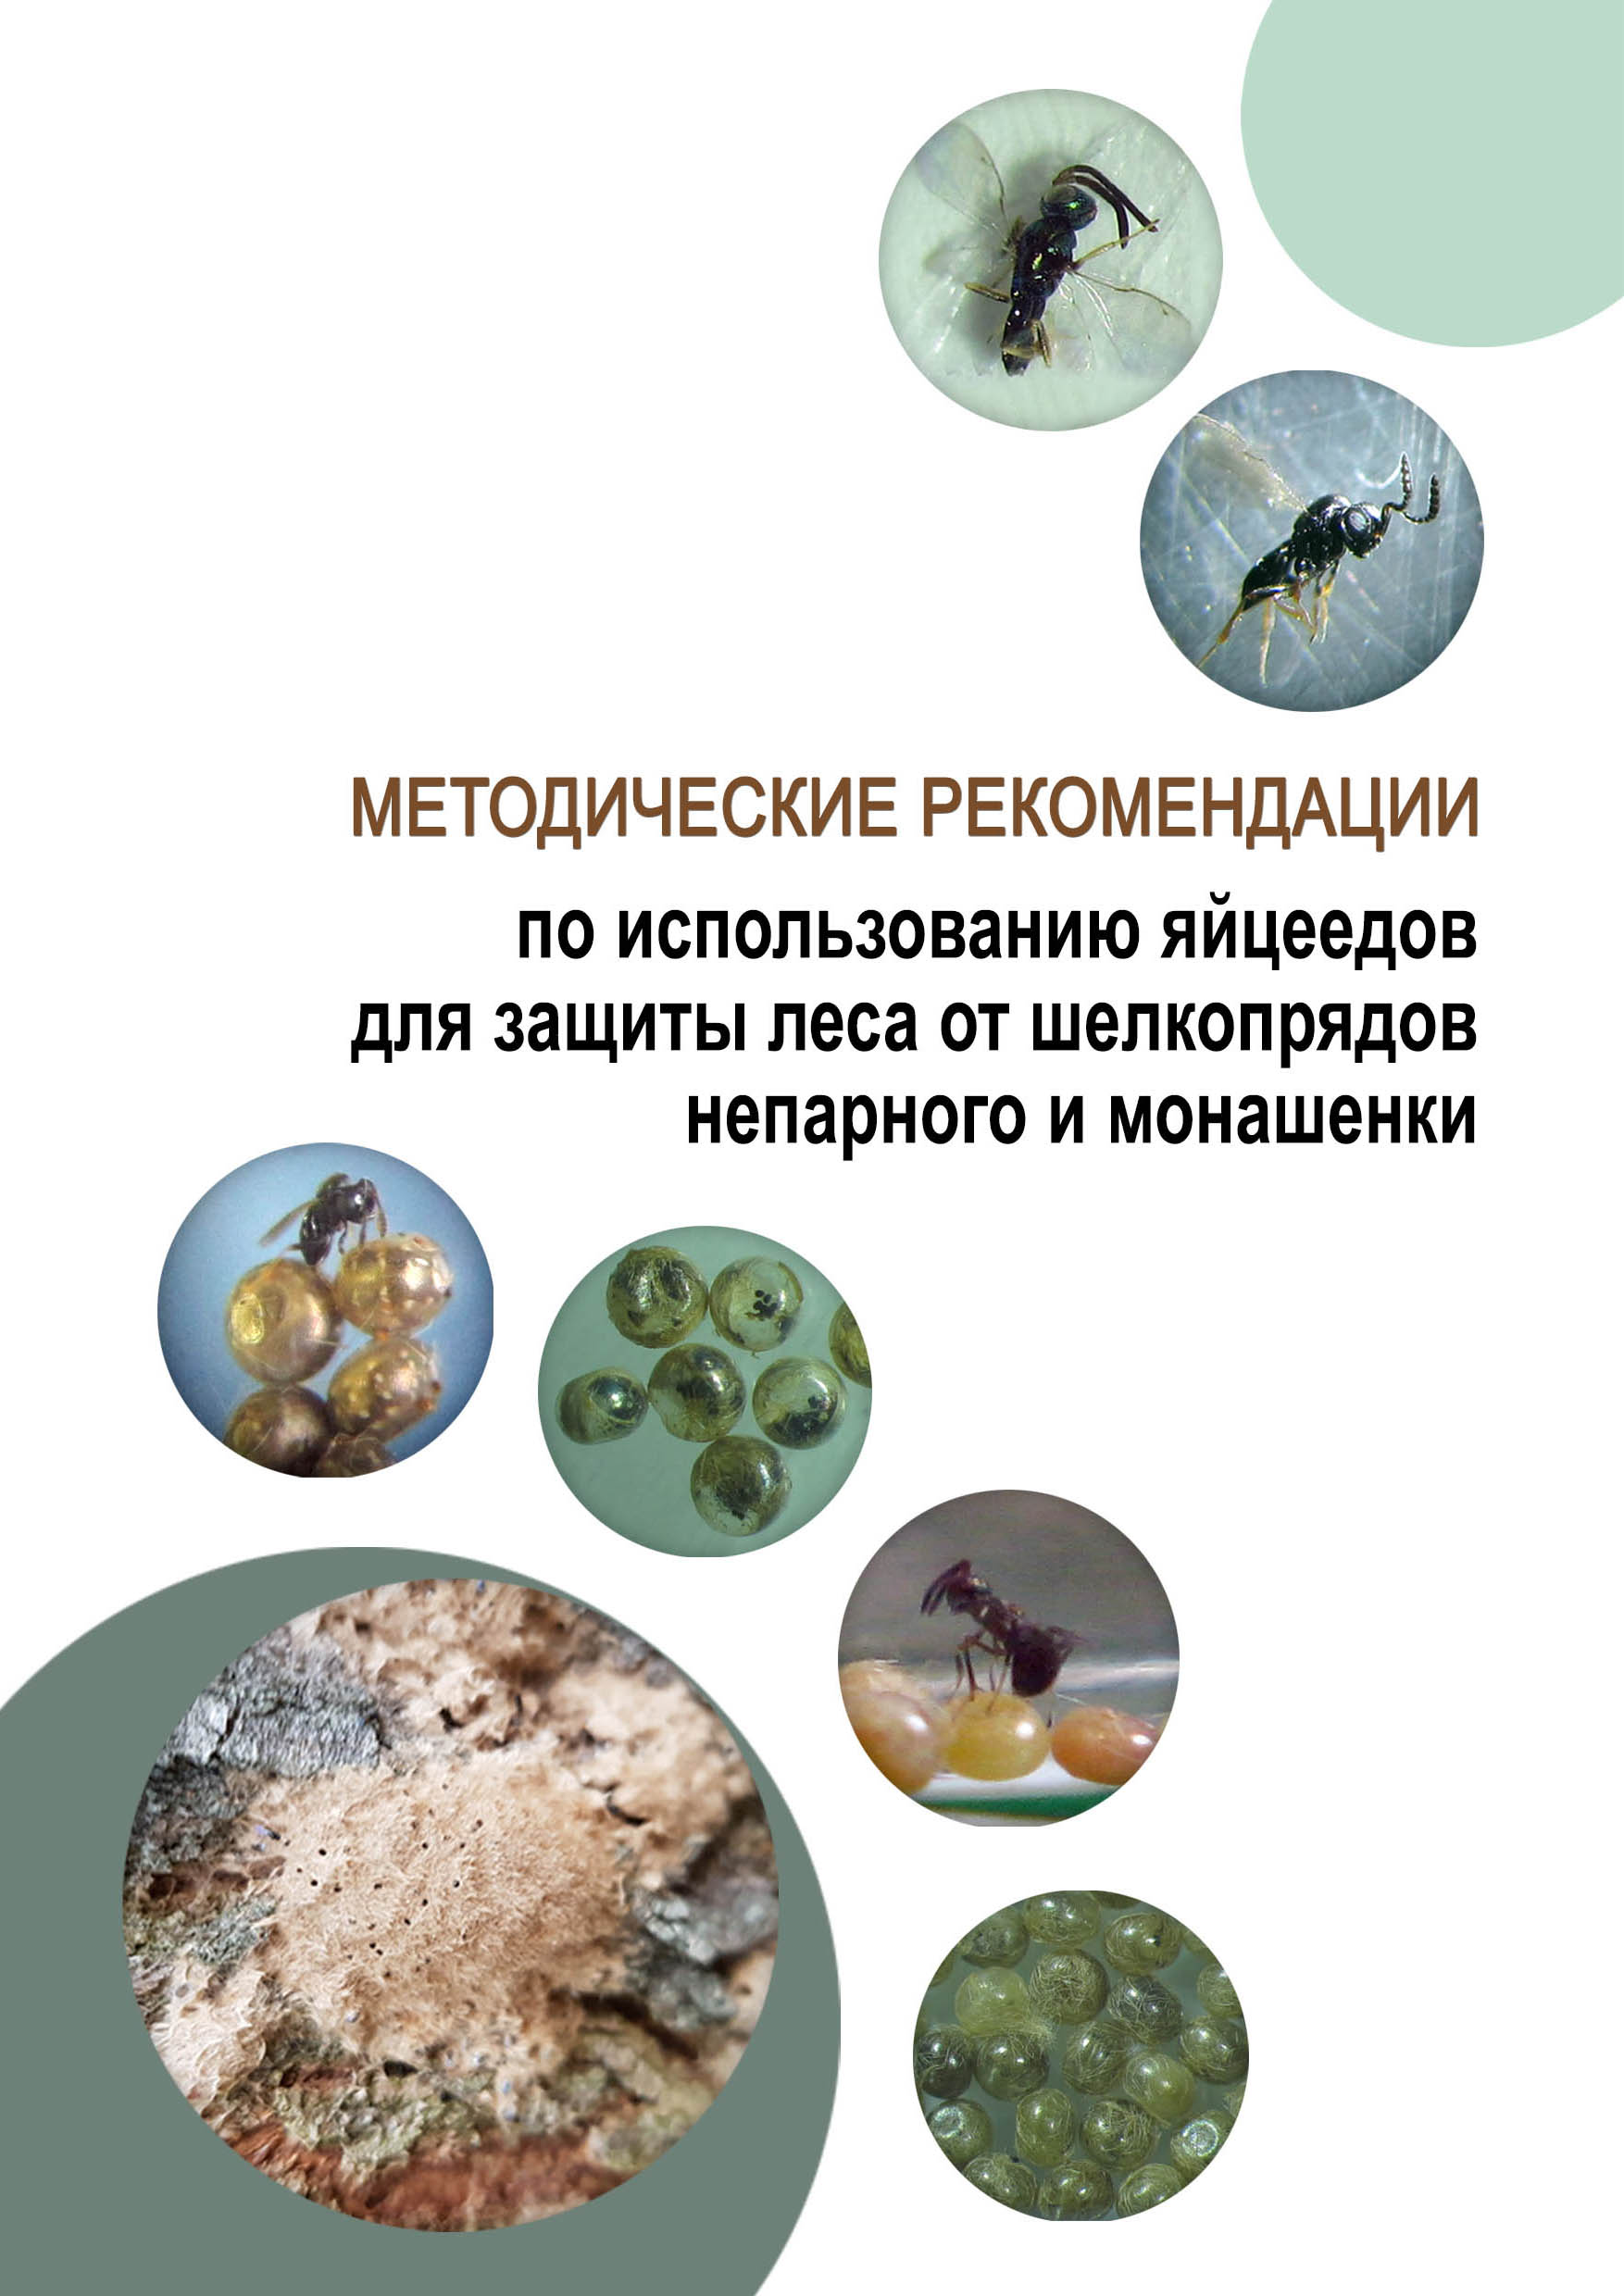 Методические рекомендации по использованию яйцеедов для защиты леса от шелкопрядов непарного и монашенки